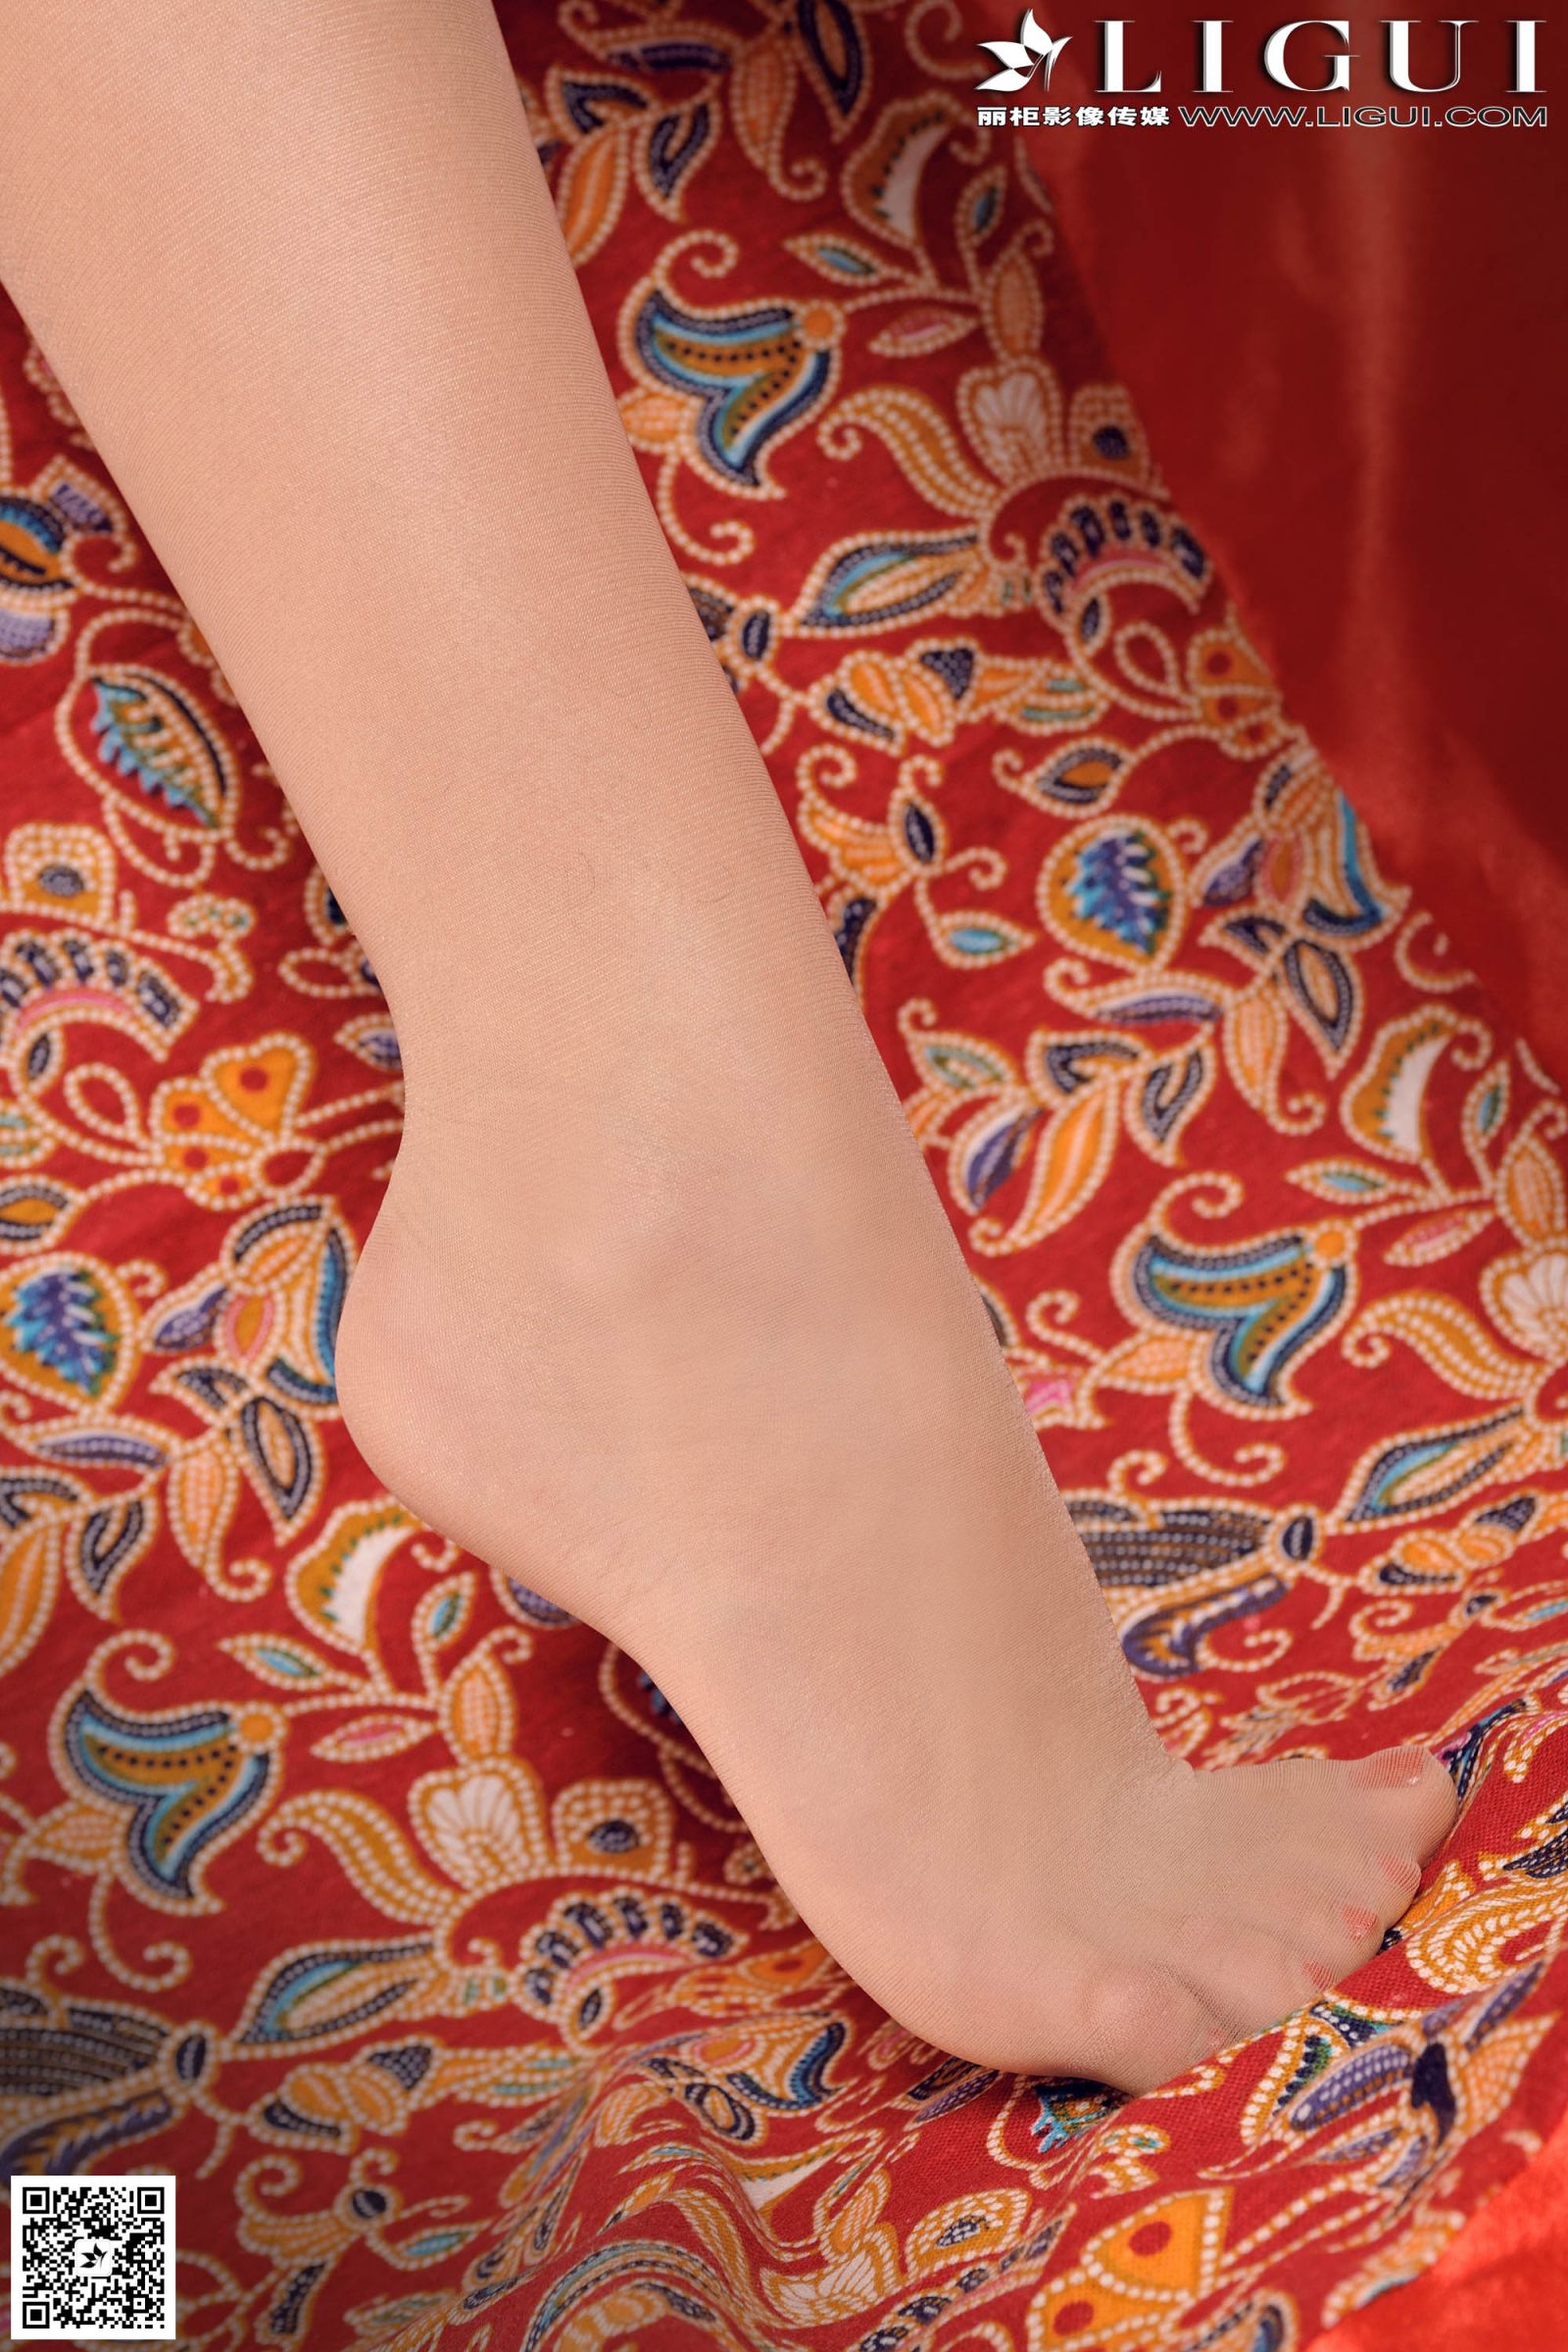 [Ligui丽柜] 可馨 - 红色古典风旗袍+肉丝长腿美足